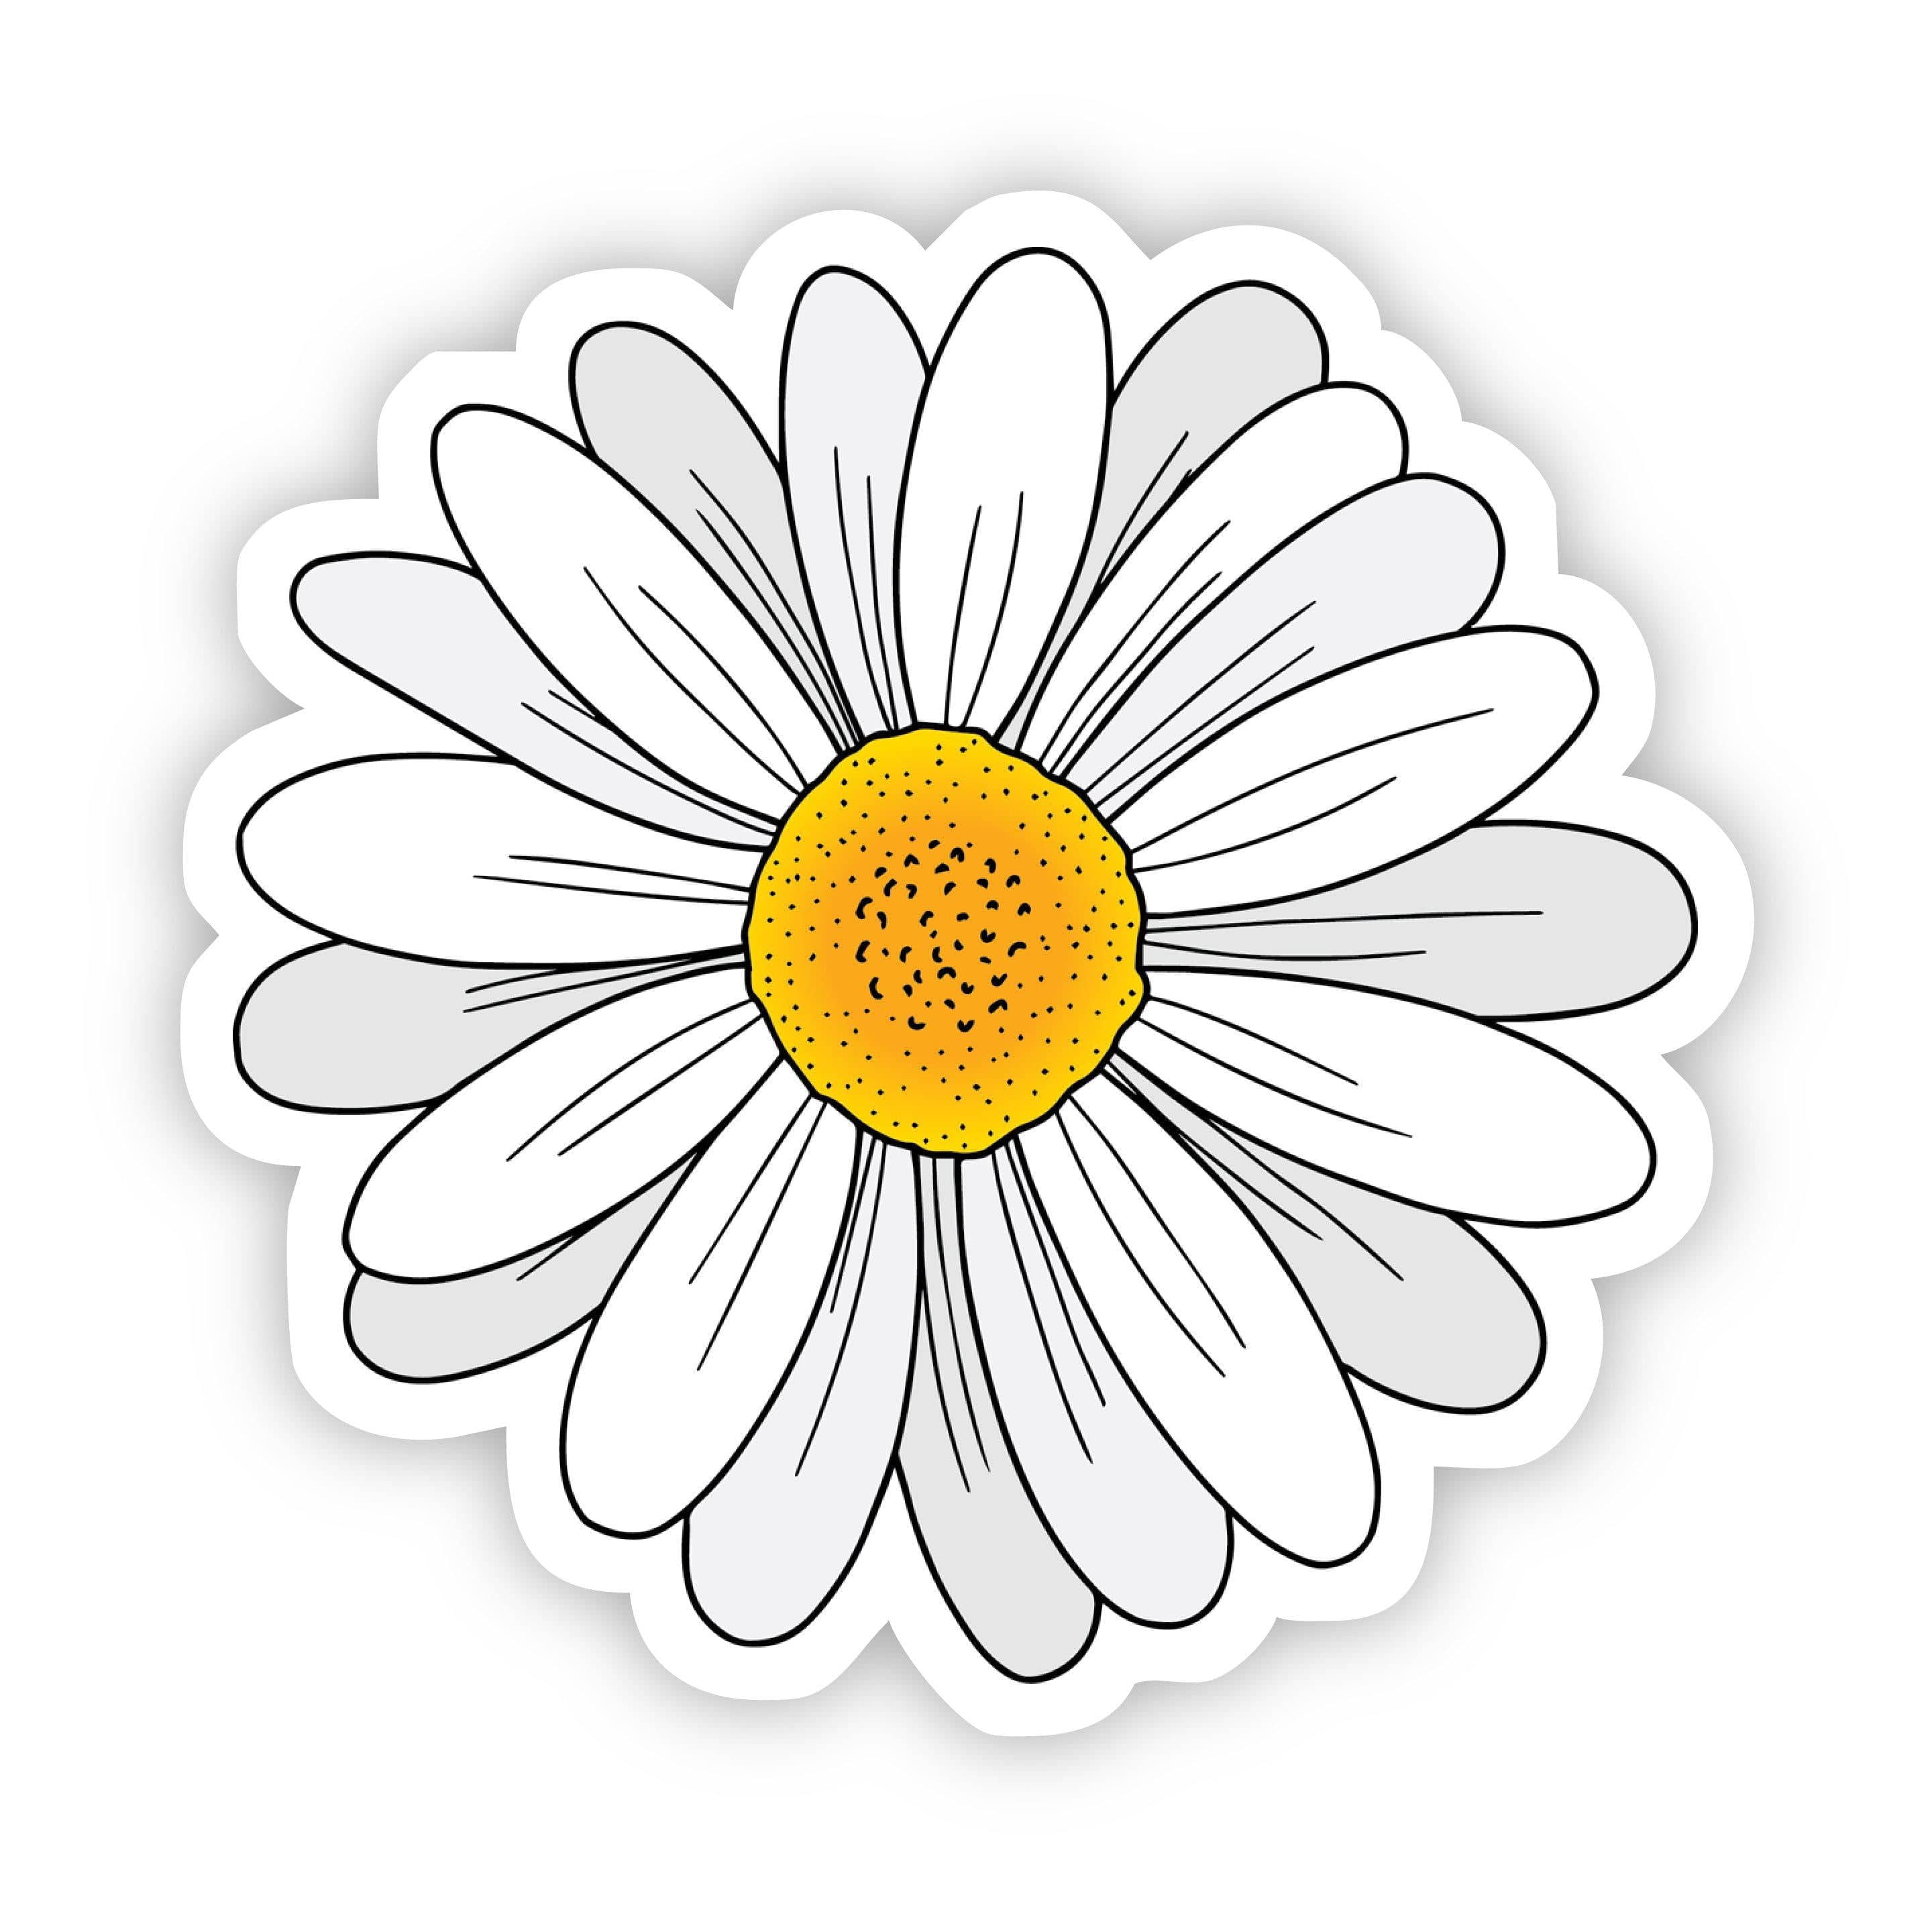 The Daisy Sticker